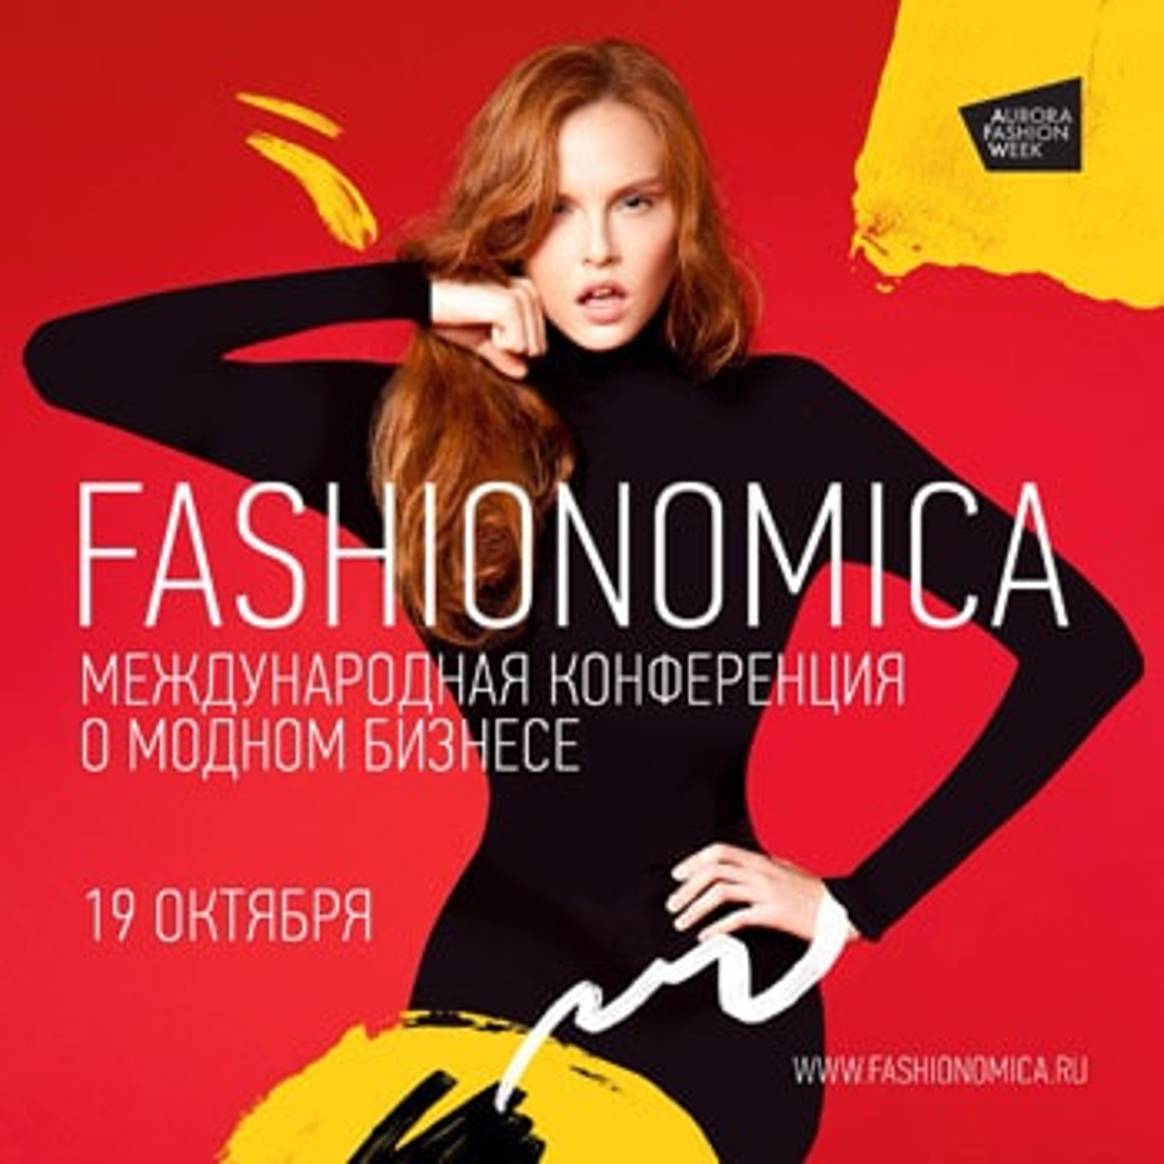 Fashionomica: спецпредложение от FashionUnited